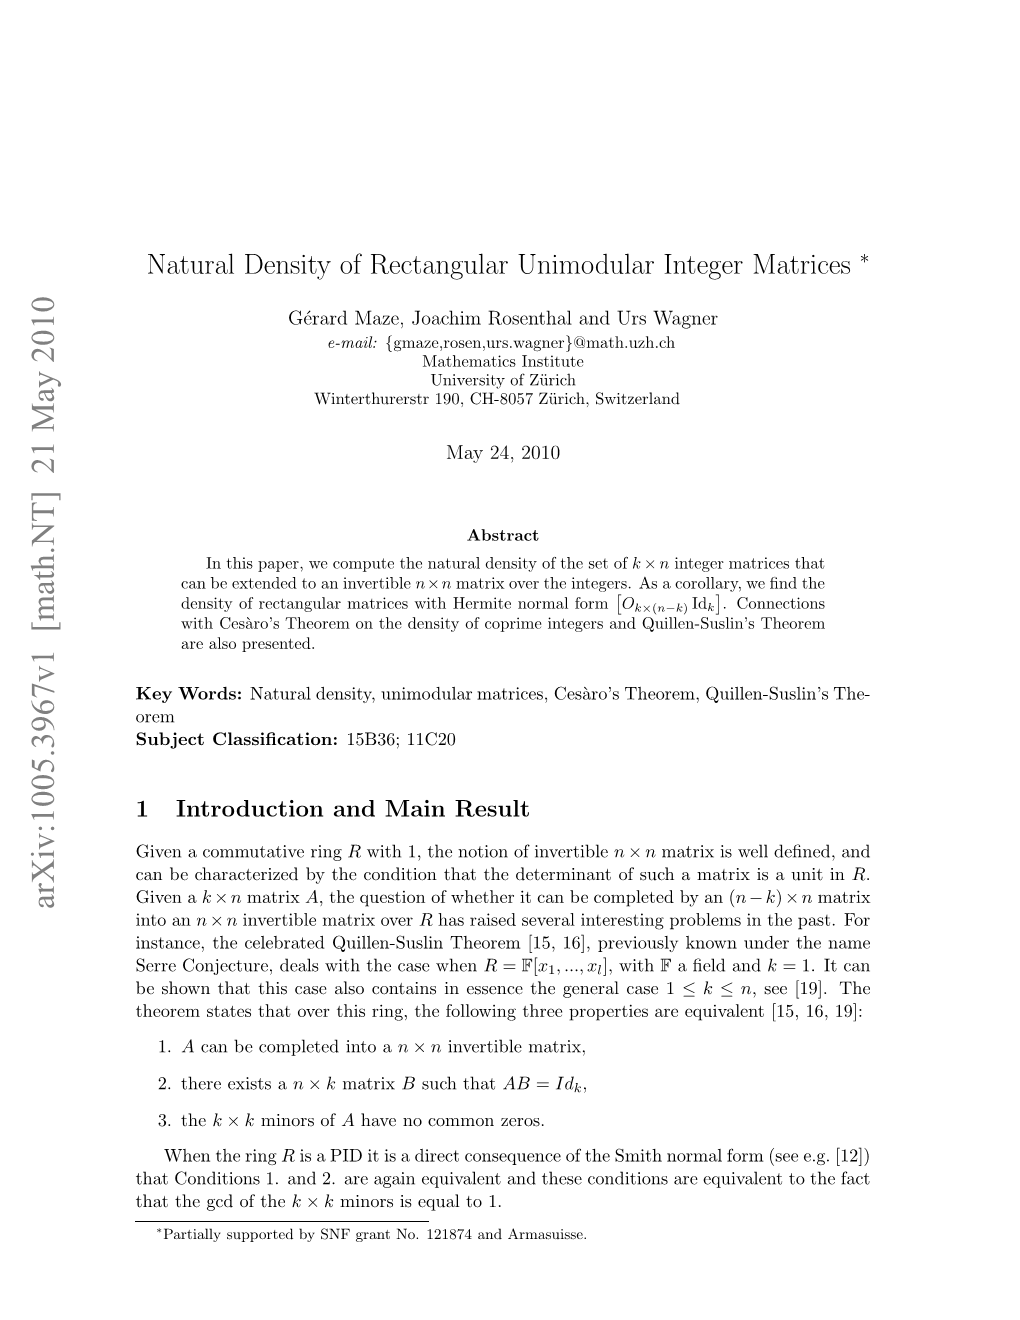 'Natural Density of Rectangular Unimodular Integer Matrices'